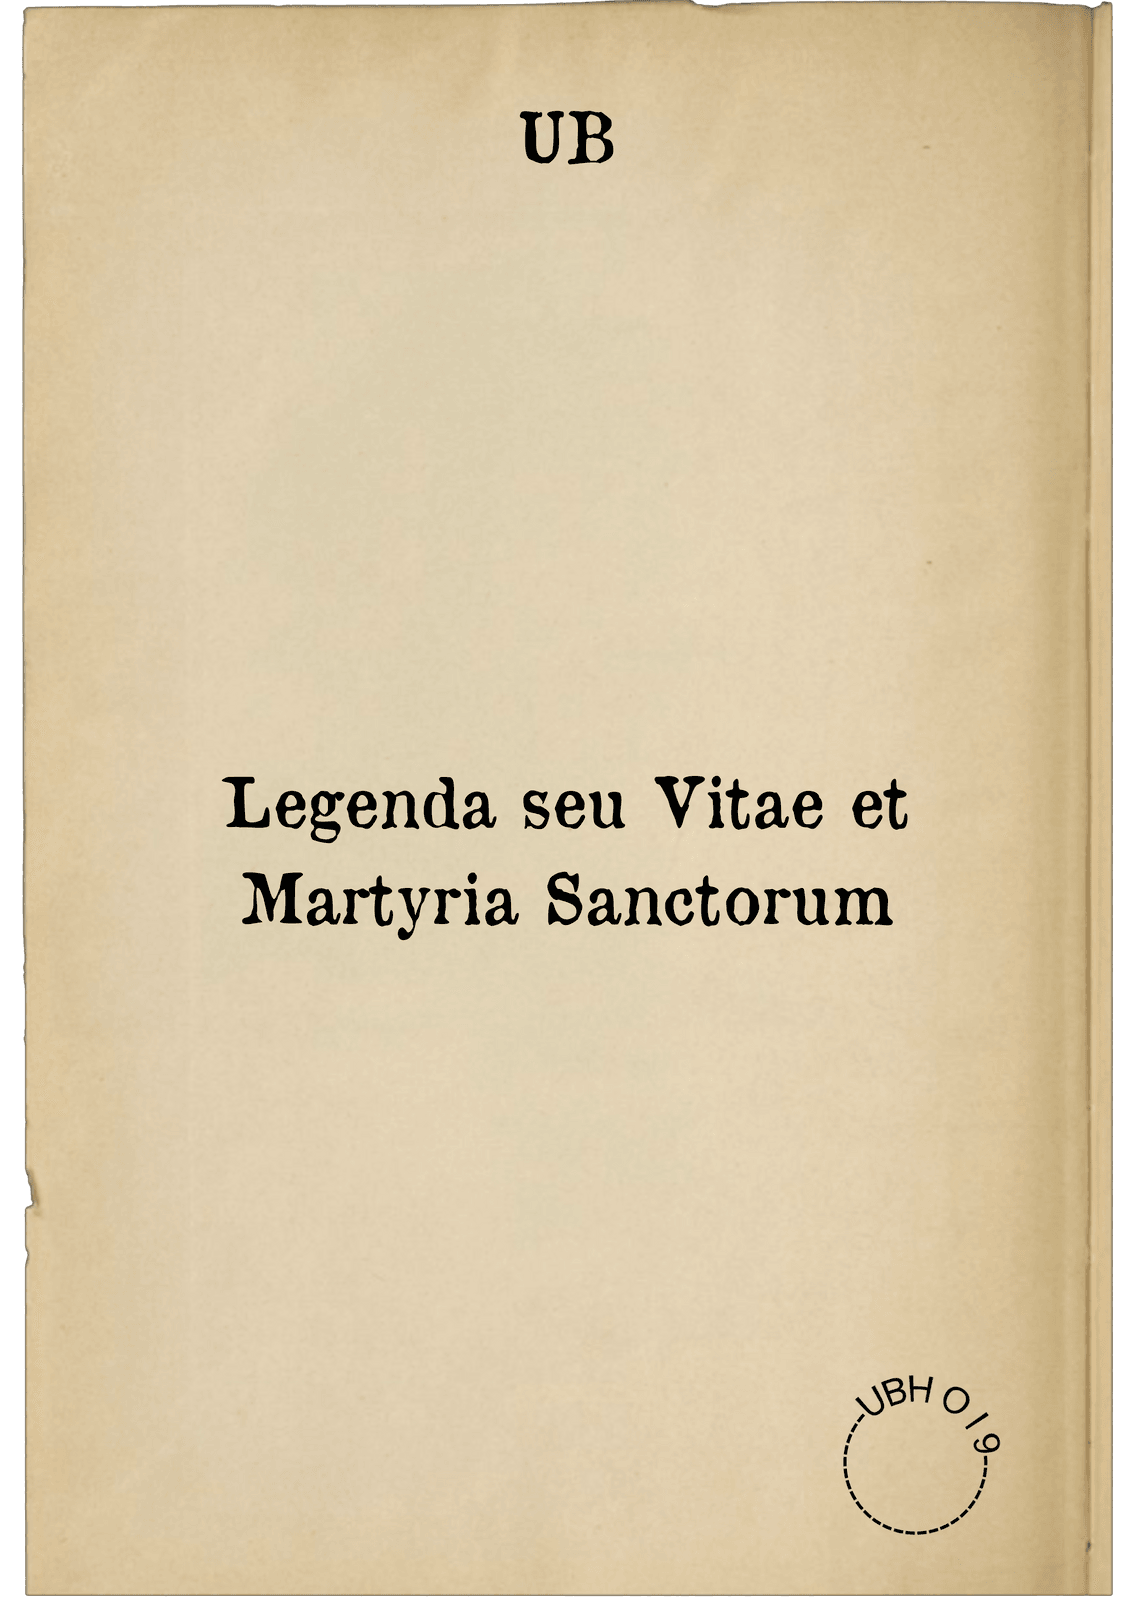 Legenda seu Vitae et Martyria Sanctorum